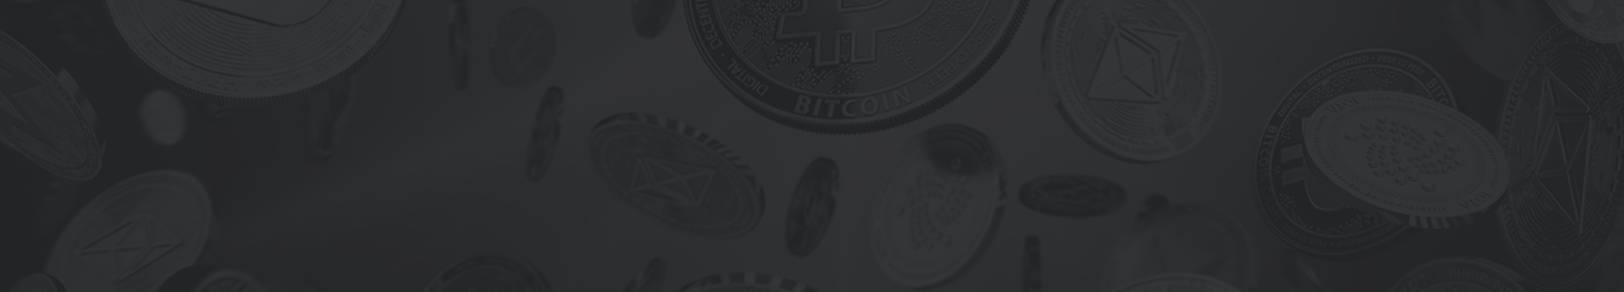 Bitcoin Machine - Ακόμα δεν έχετε εγγραφεί στο Bitcoin Machine;